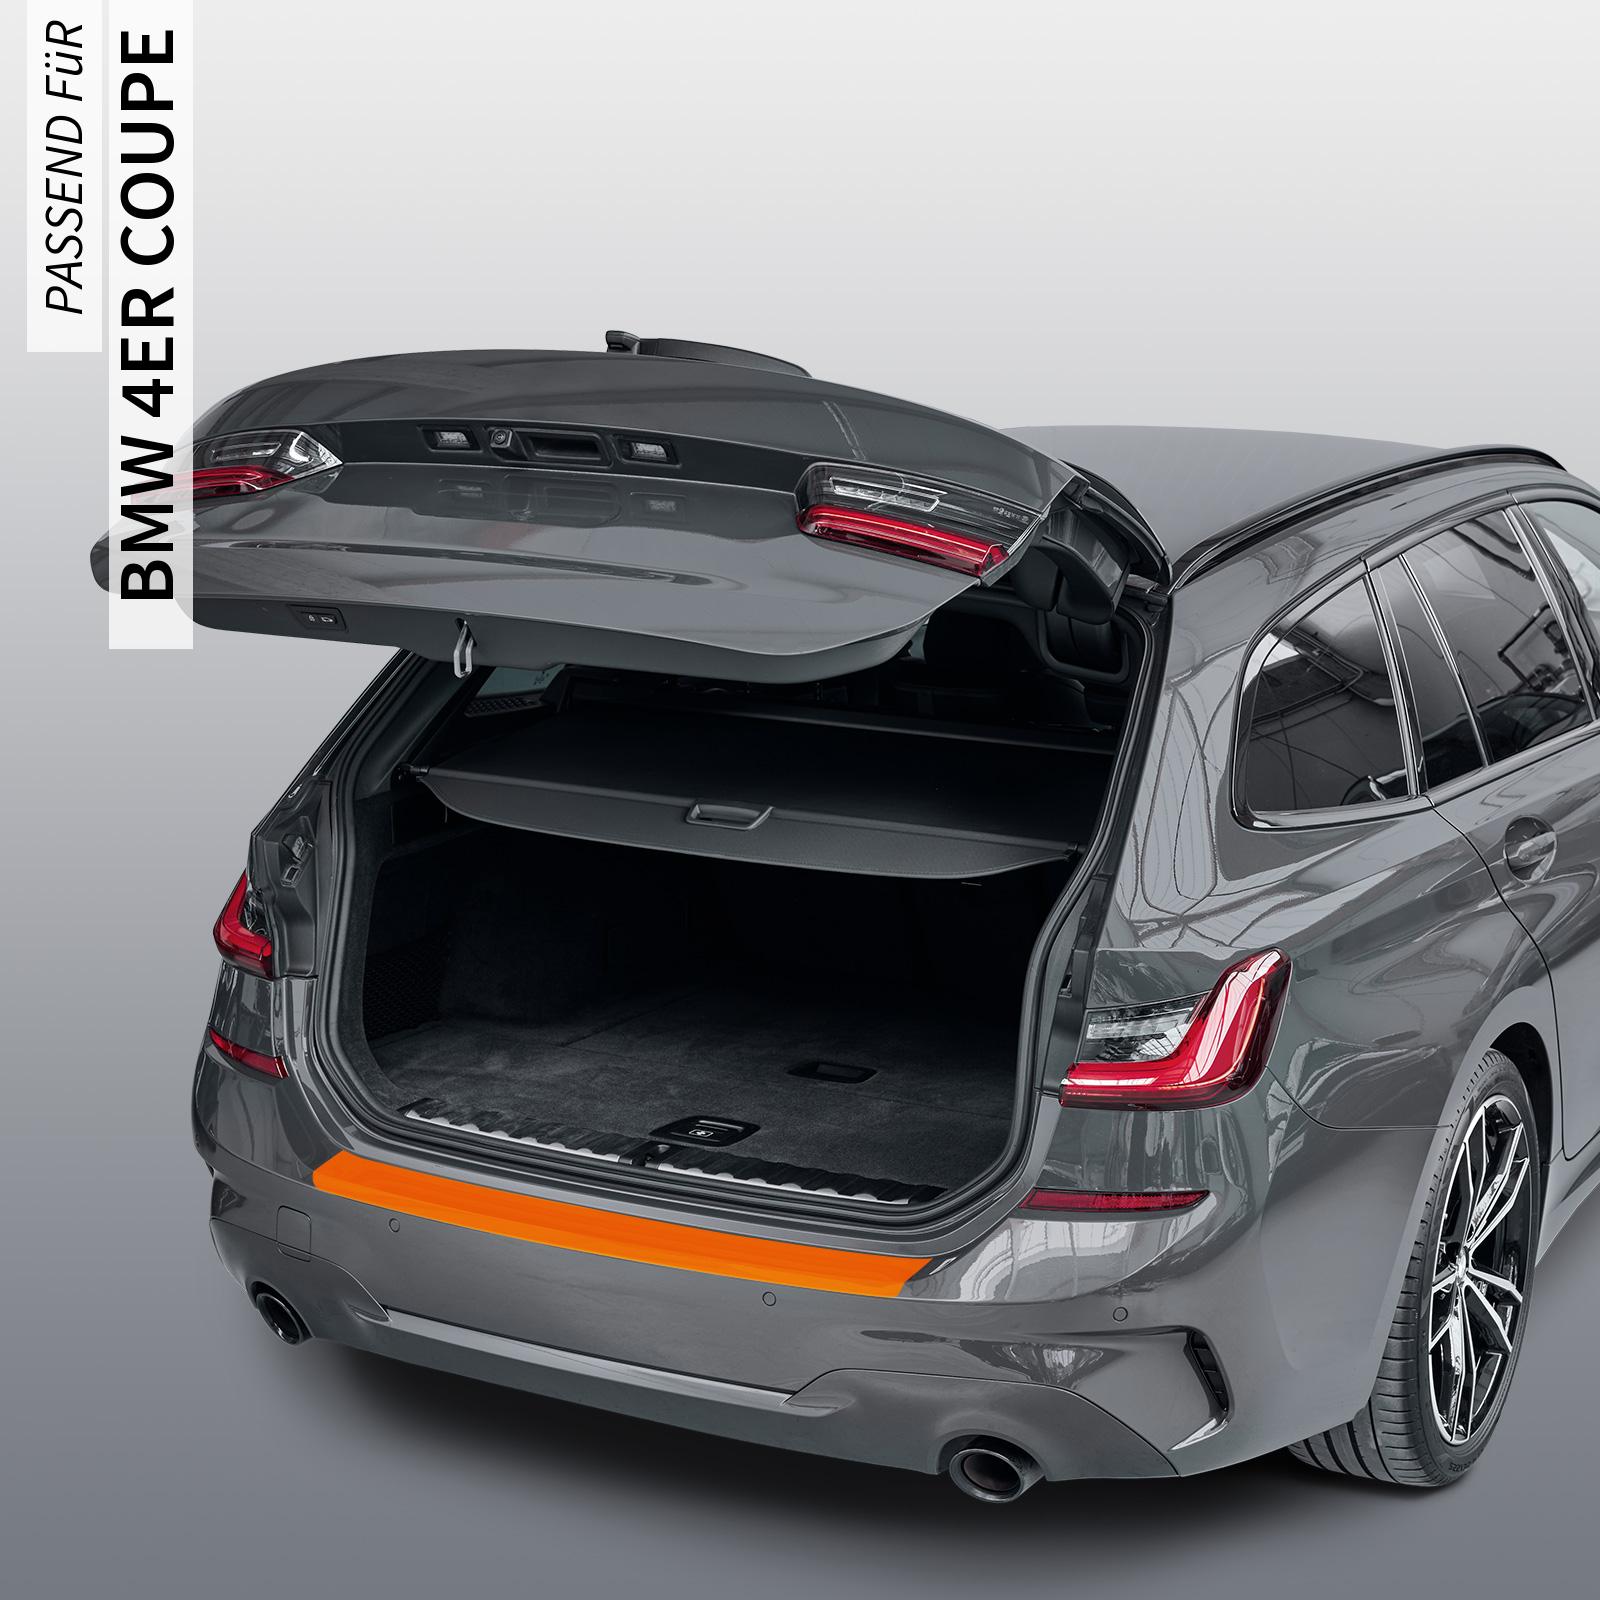 Ladekantenschutzfolie - Transparent Glatt MATT 110 µm stark  für BMW 4er Coupe Typ G22, ab BJ 10/2020